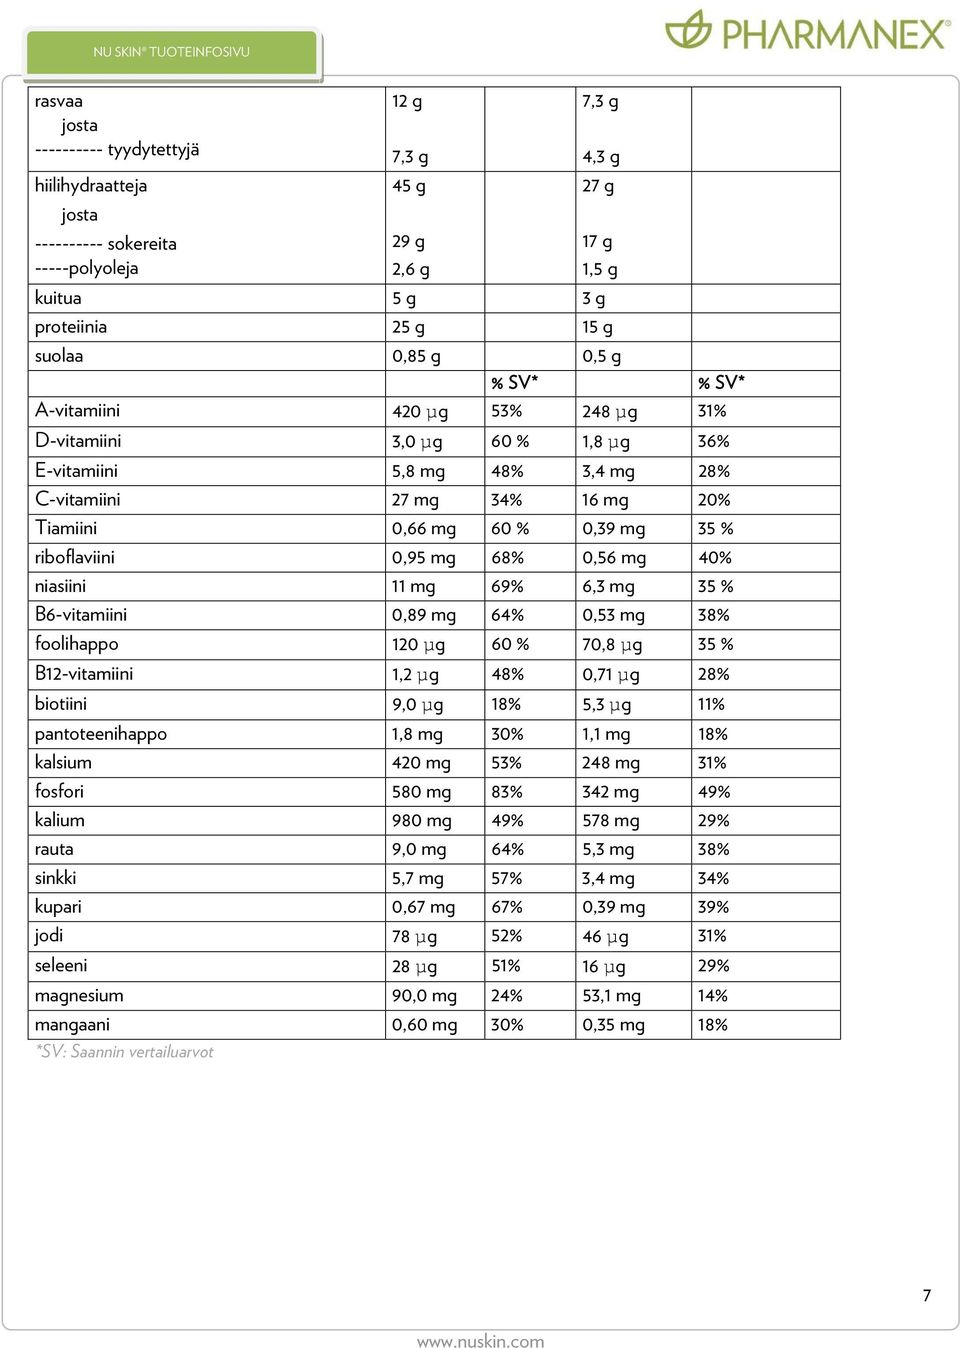 mg 68% 0,56 mg 40% niasiini 11 mg 69% 6,3 mg 35 % B6-vitamiini 0,89 mg 64% 0,53 mg 38% foolihappo 120 µg 60 % 70,8 µg 35 % B12-vitamiini 1,2 µg 48% 0,71 µg 28% biotiini 9,0 µg 18% 5,3 µg 11%